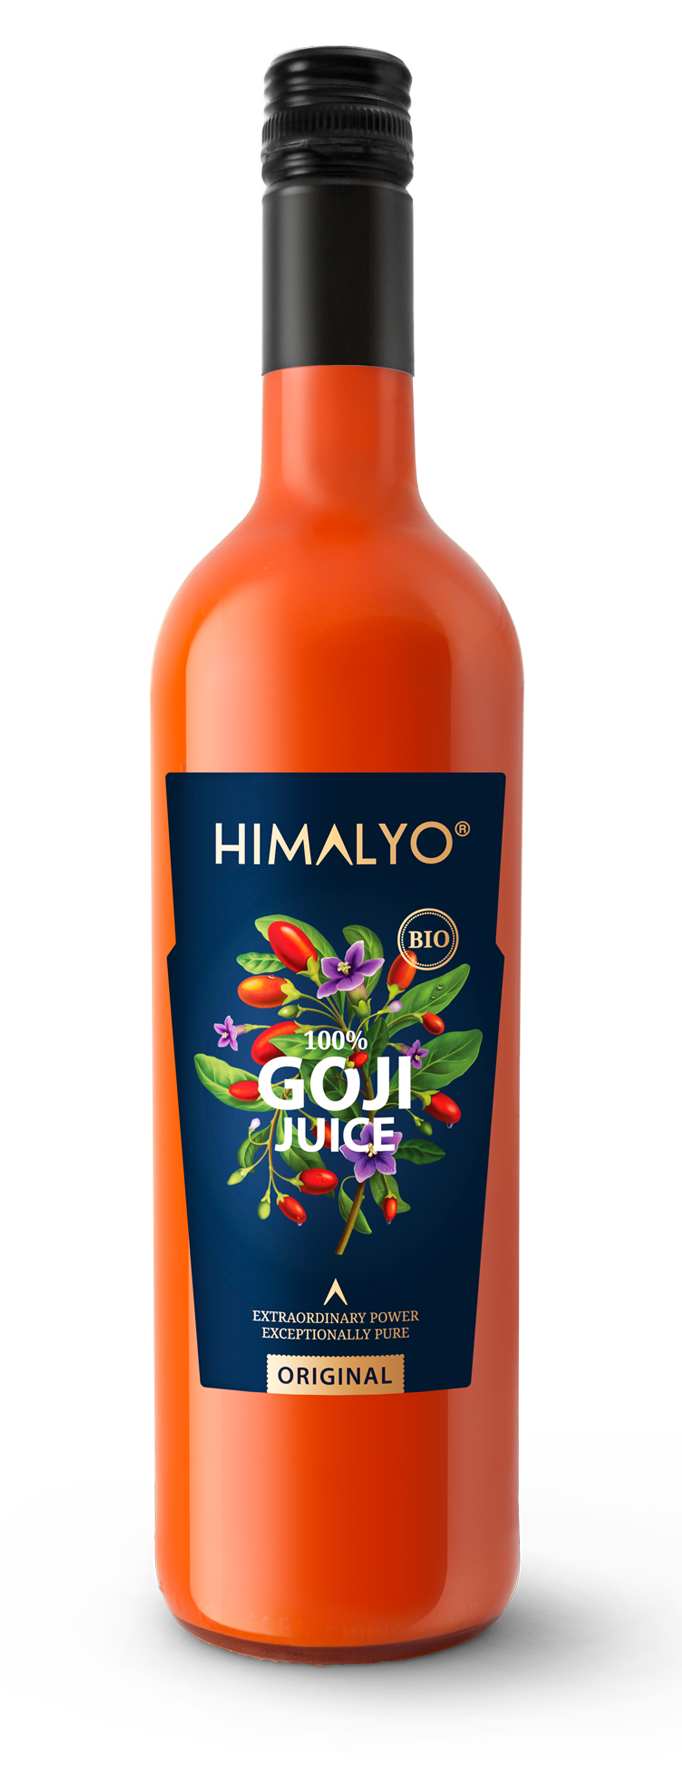 Himalyo BIO Goji Juice 100% (šťáva z plodů kustovnice čínské) 750 ml